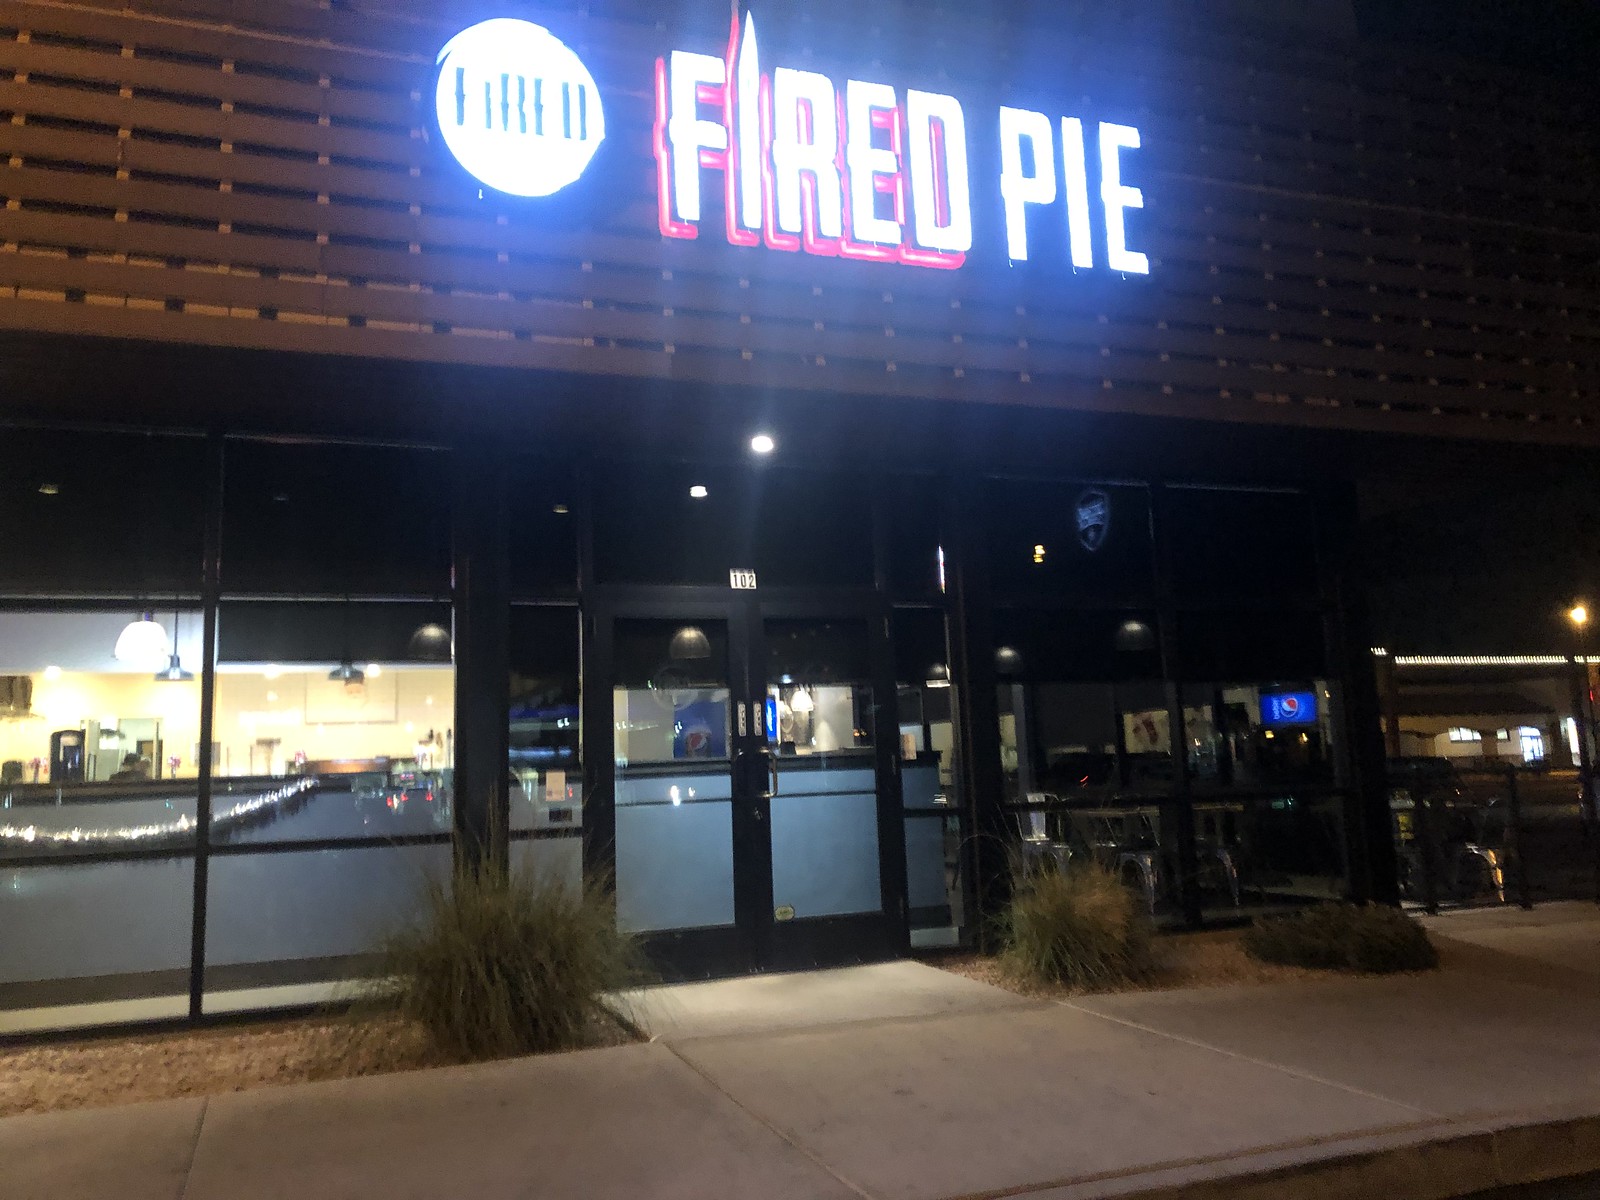 Fried pie